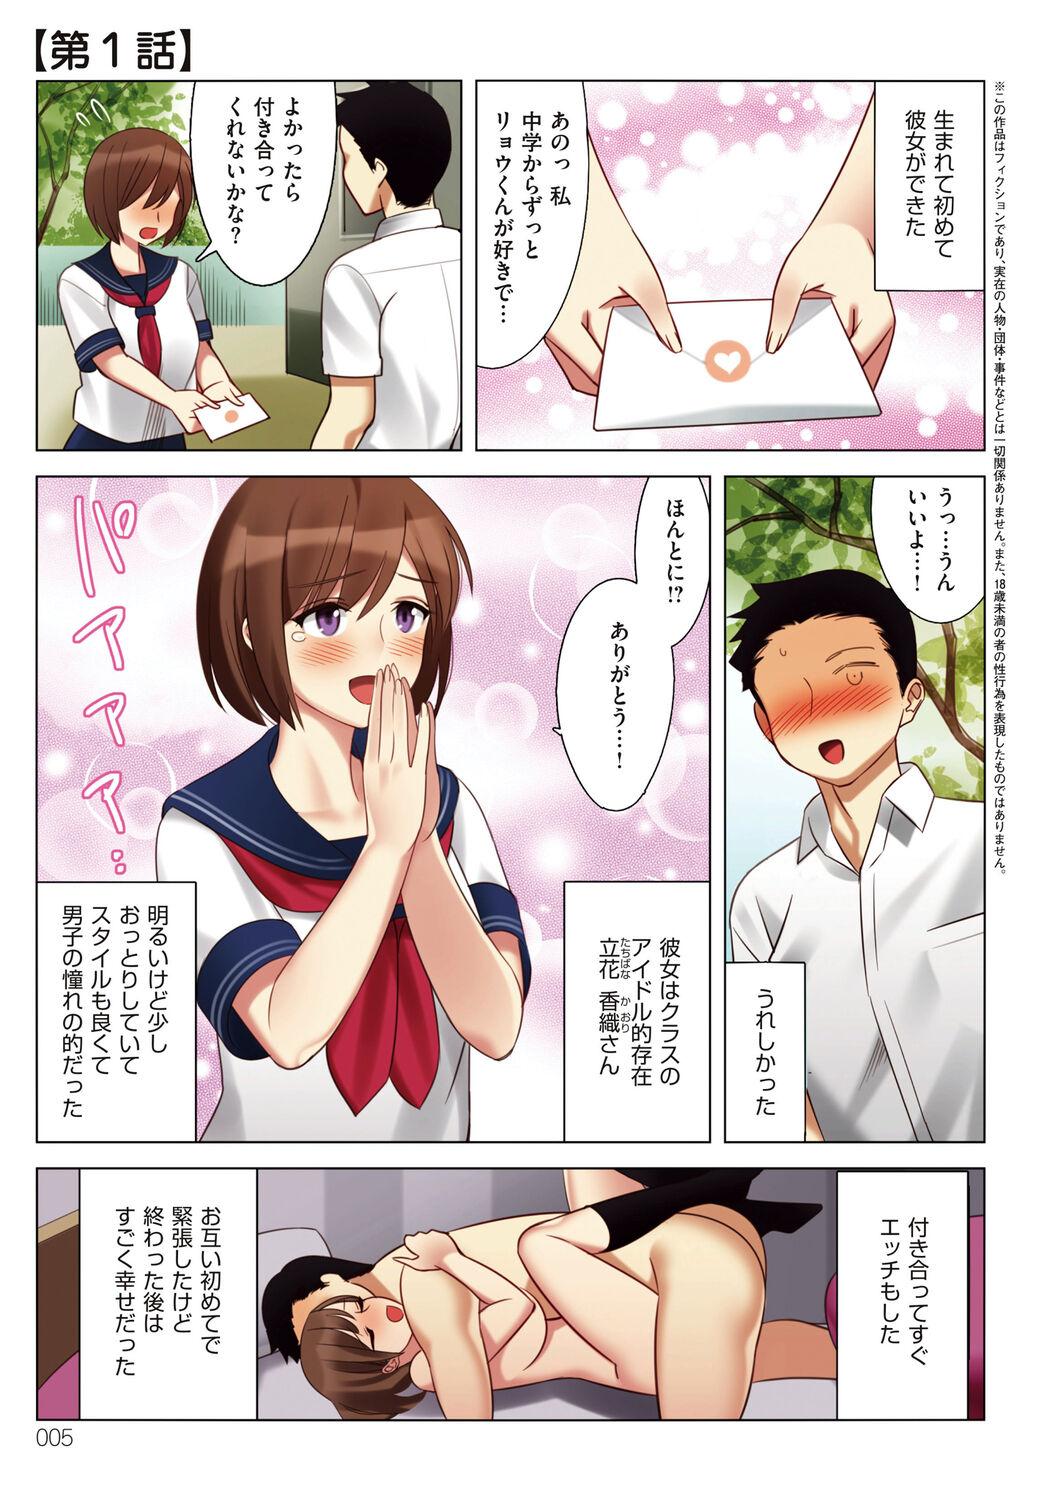 Abg Boku to Kanojo no Okaa-san Girlsfucking - Page 5